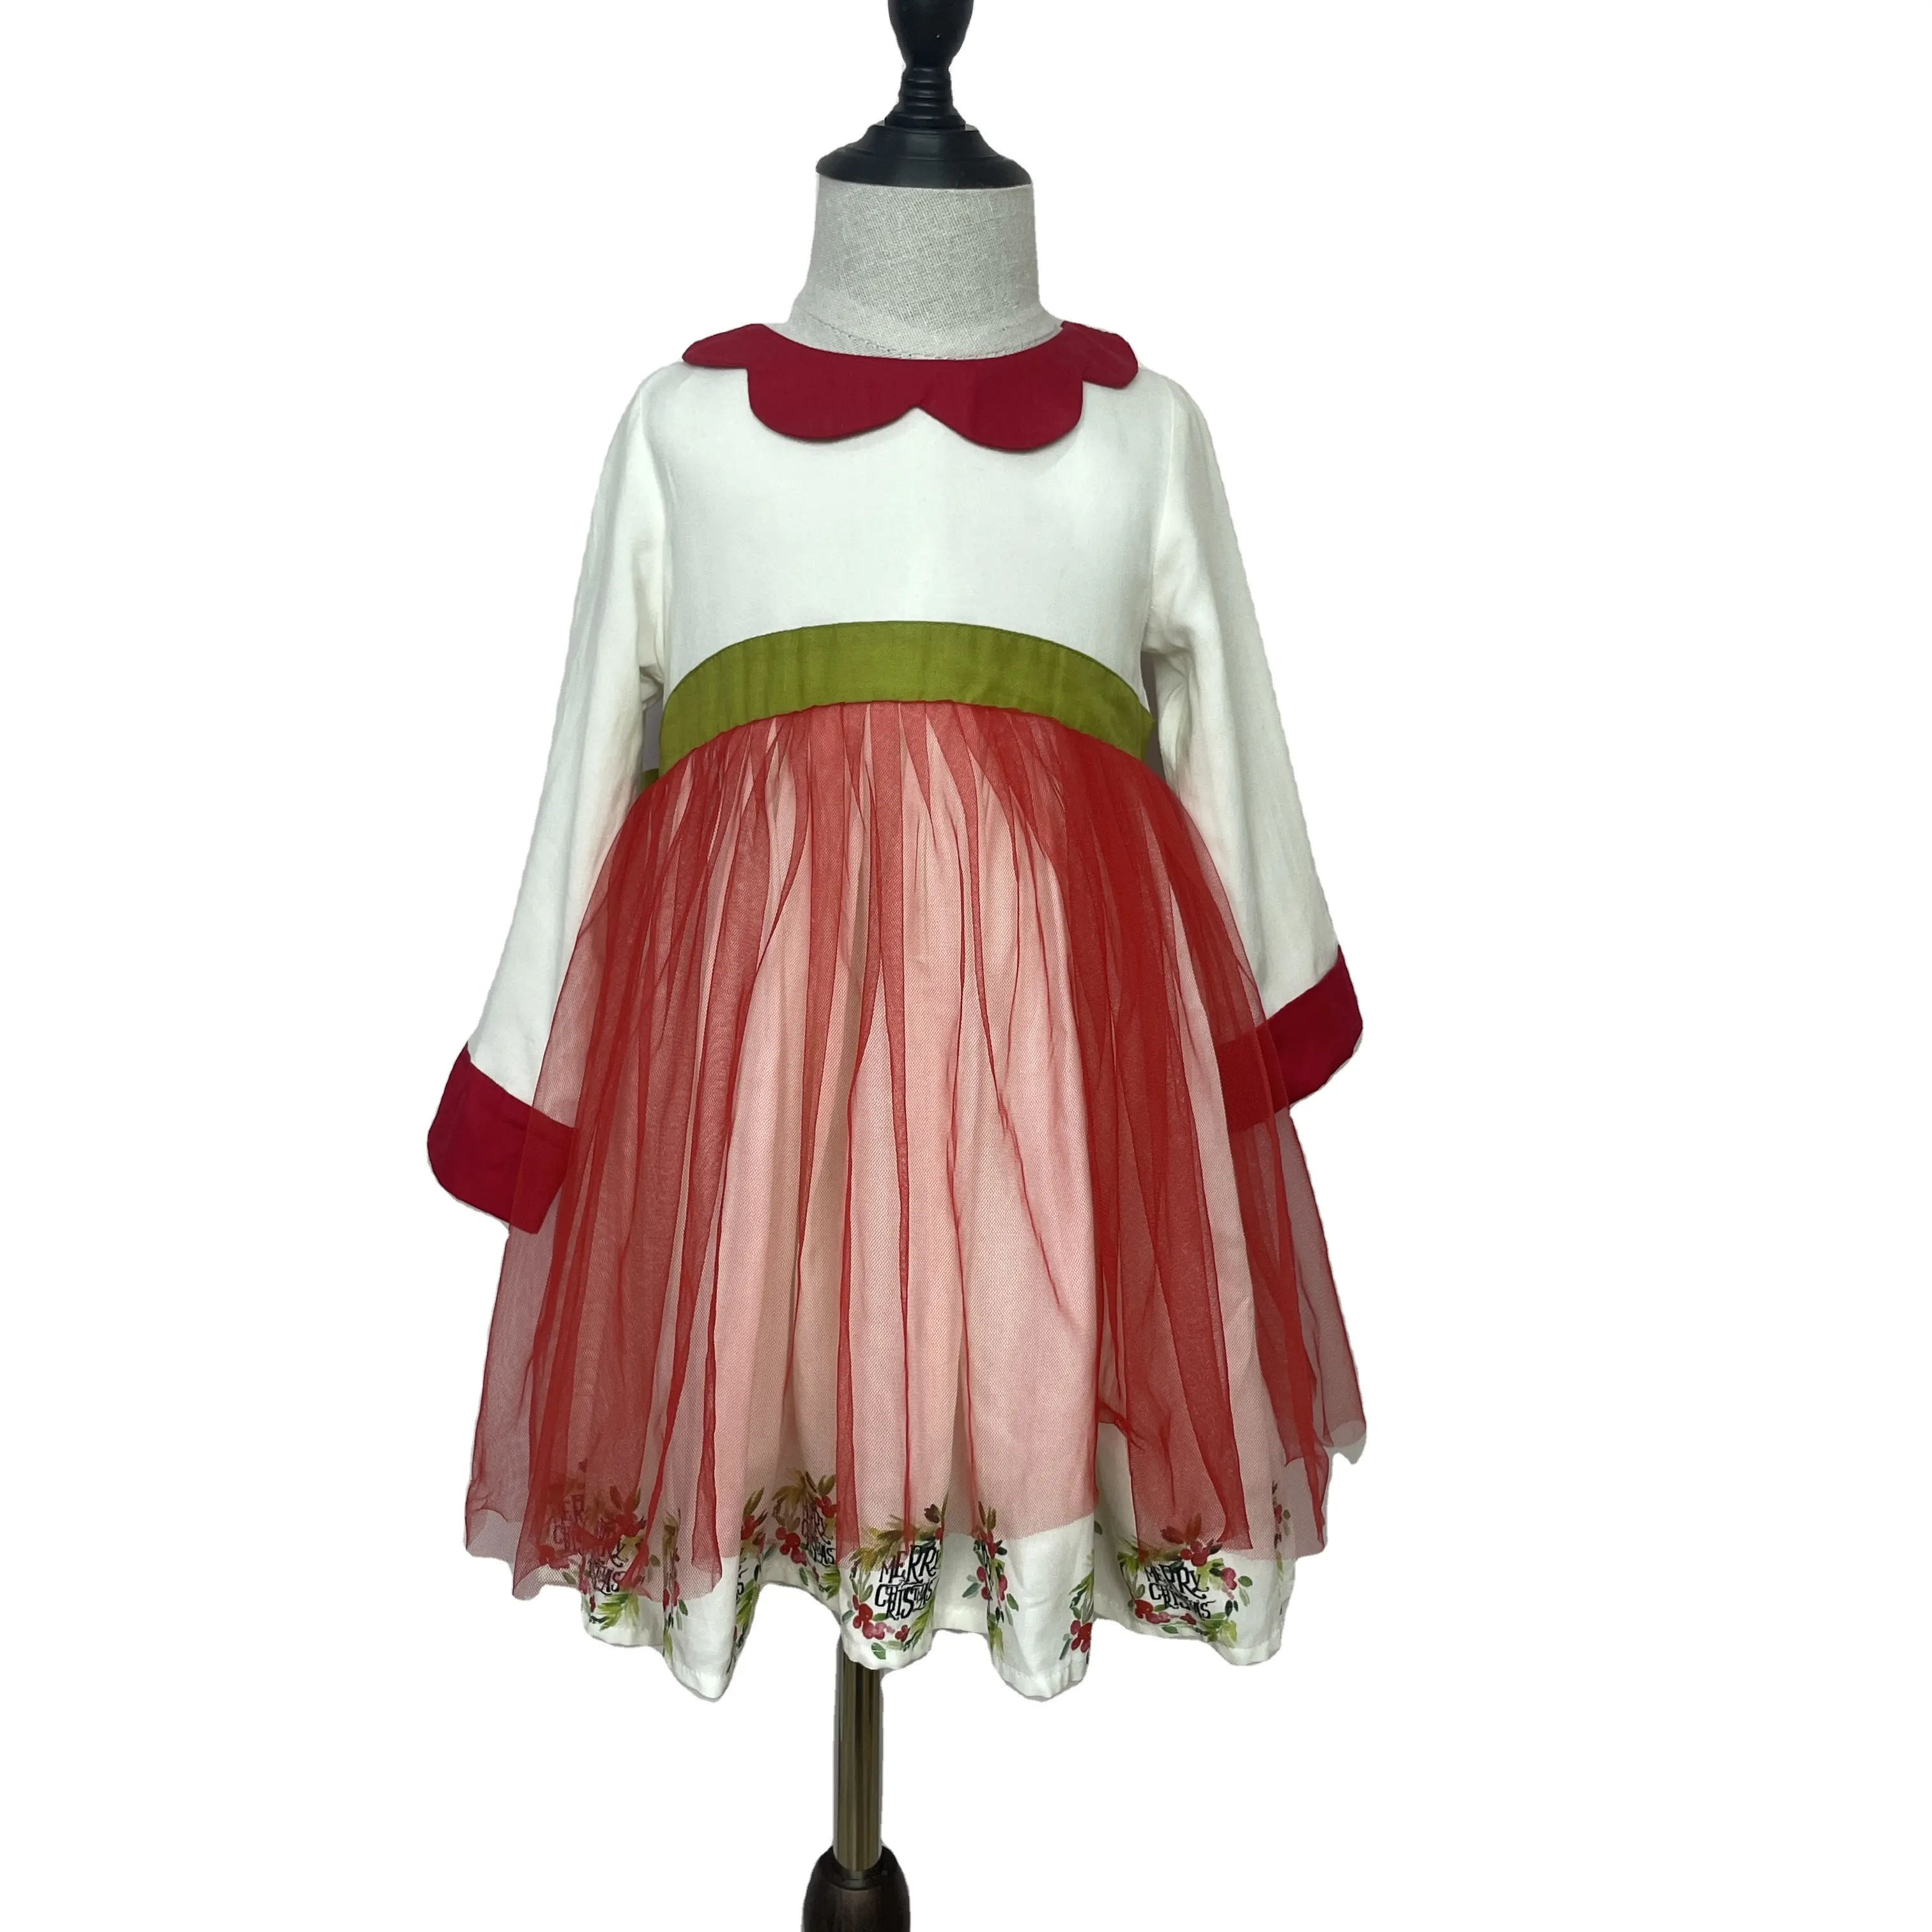 Vente en gros de robes Irwsewiee 100% tricot de coton pour bébés filles avec motif d'impression numérique et de maille rouge pour enfants, robe de Noël rouge pour filles